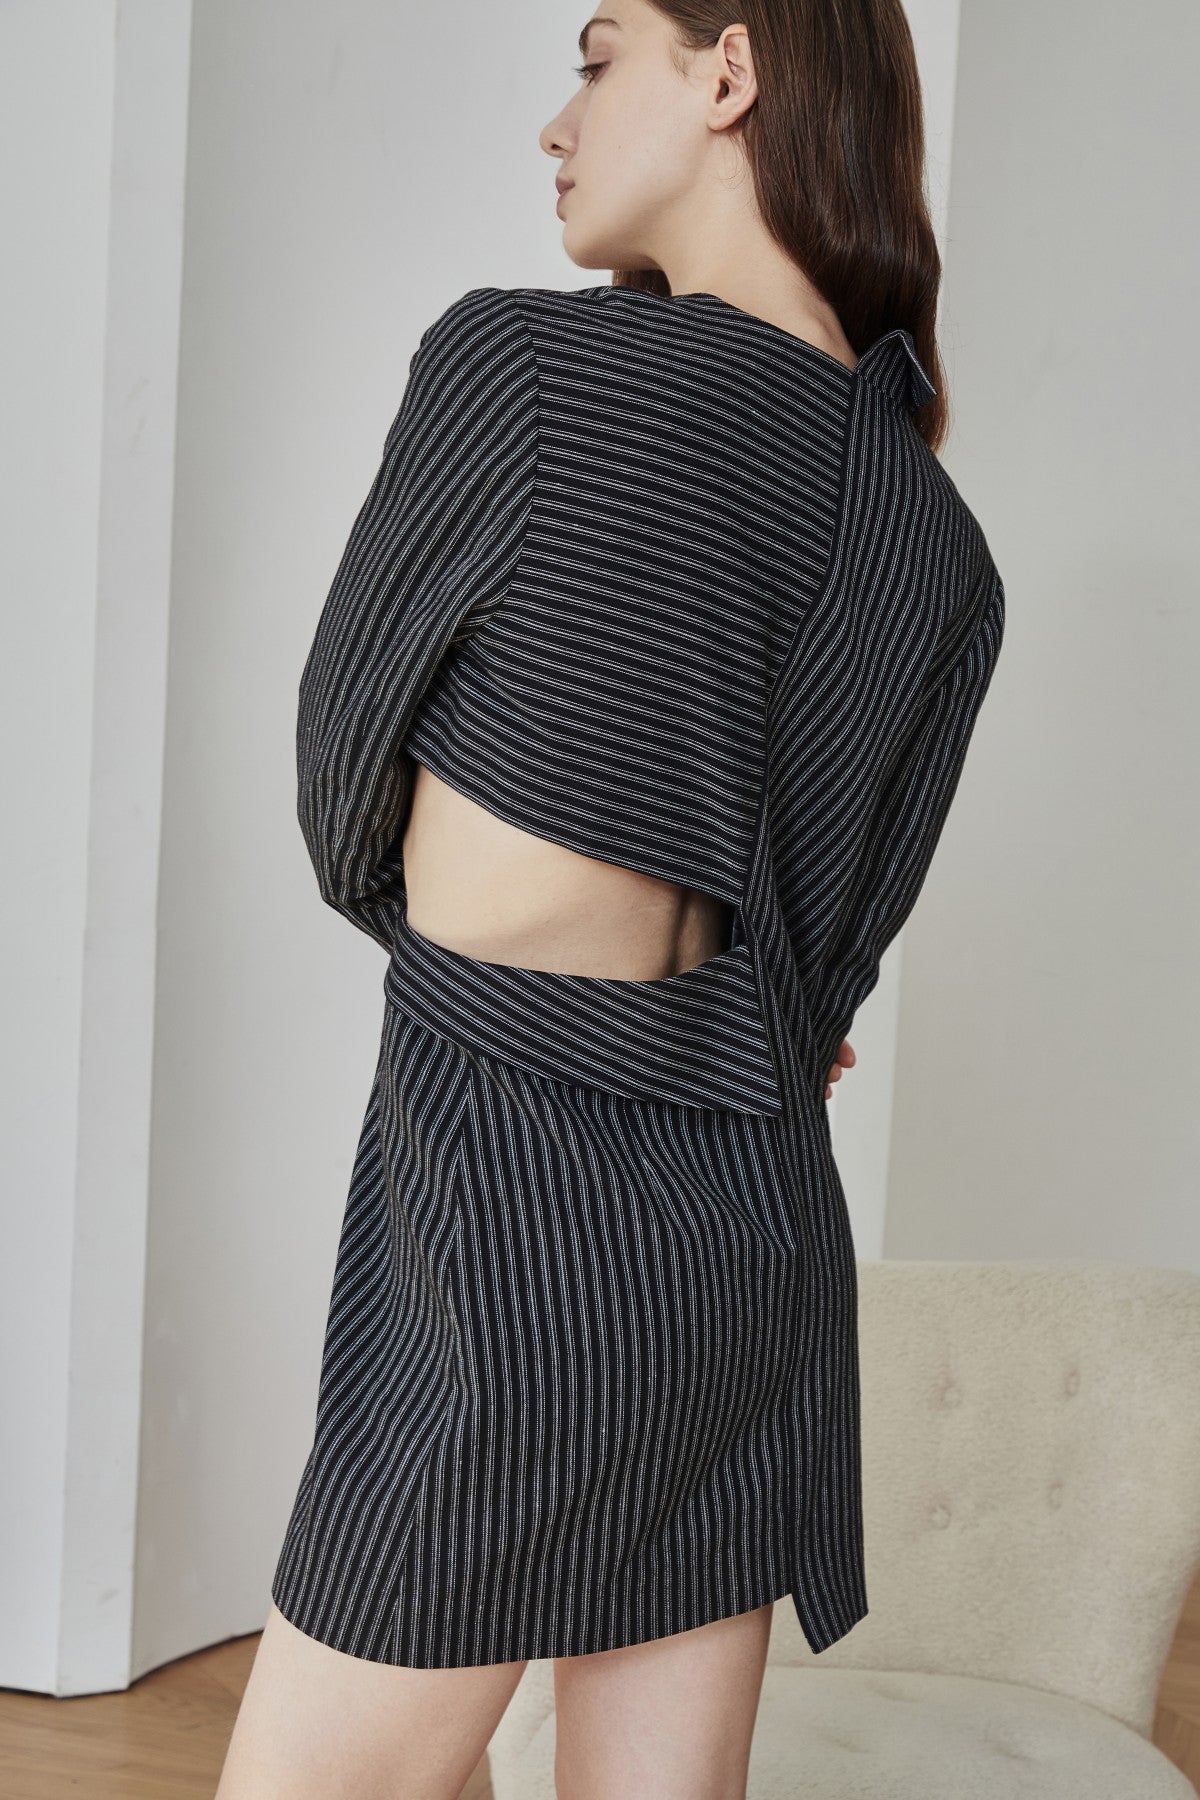 Black Base White Pinstripe Asymmetrical Blazer Dress - By Quaint